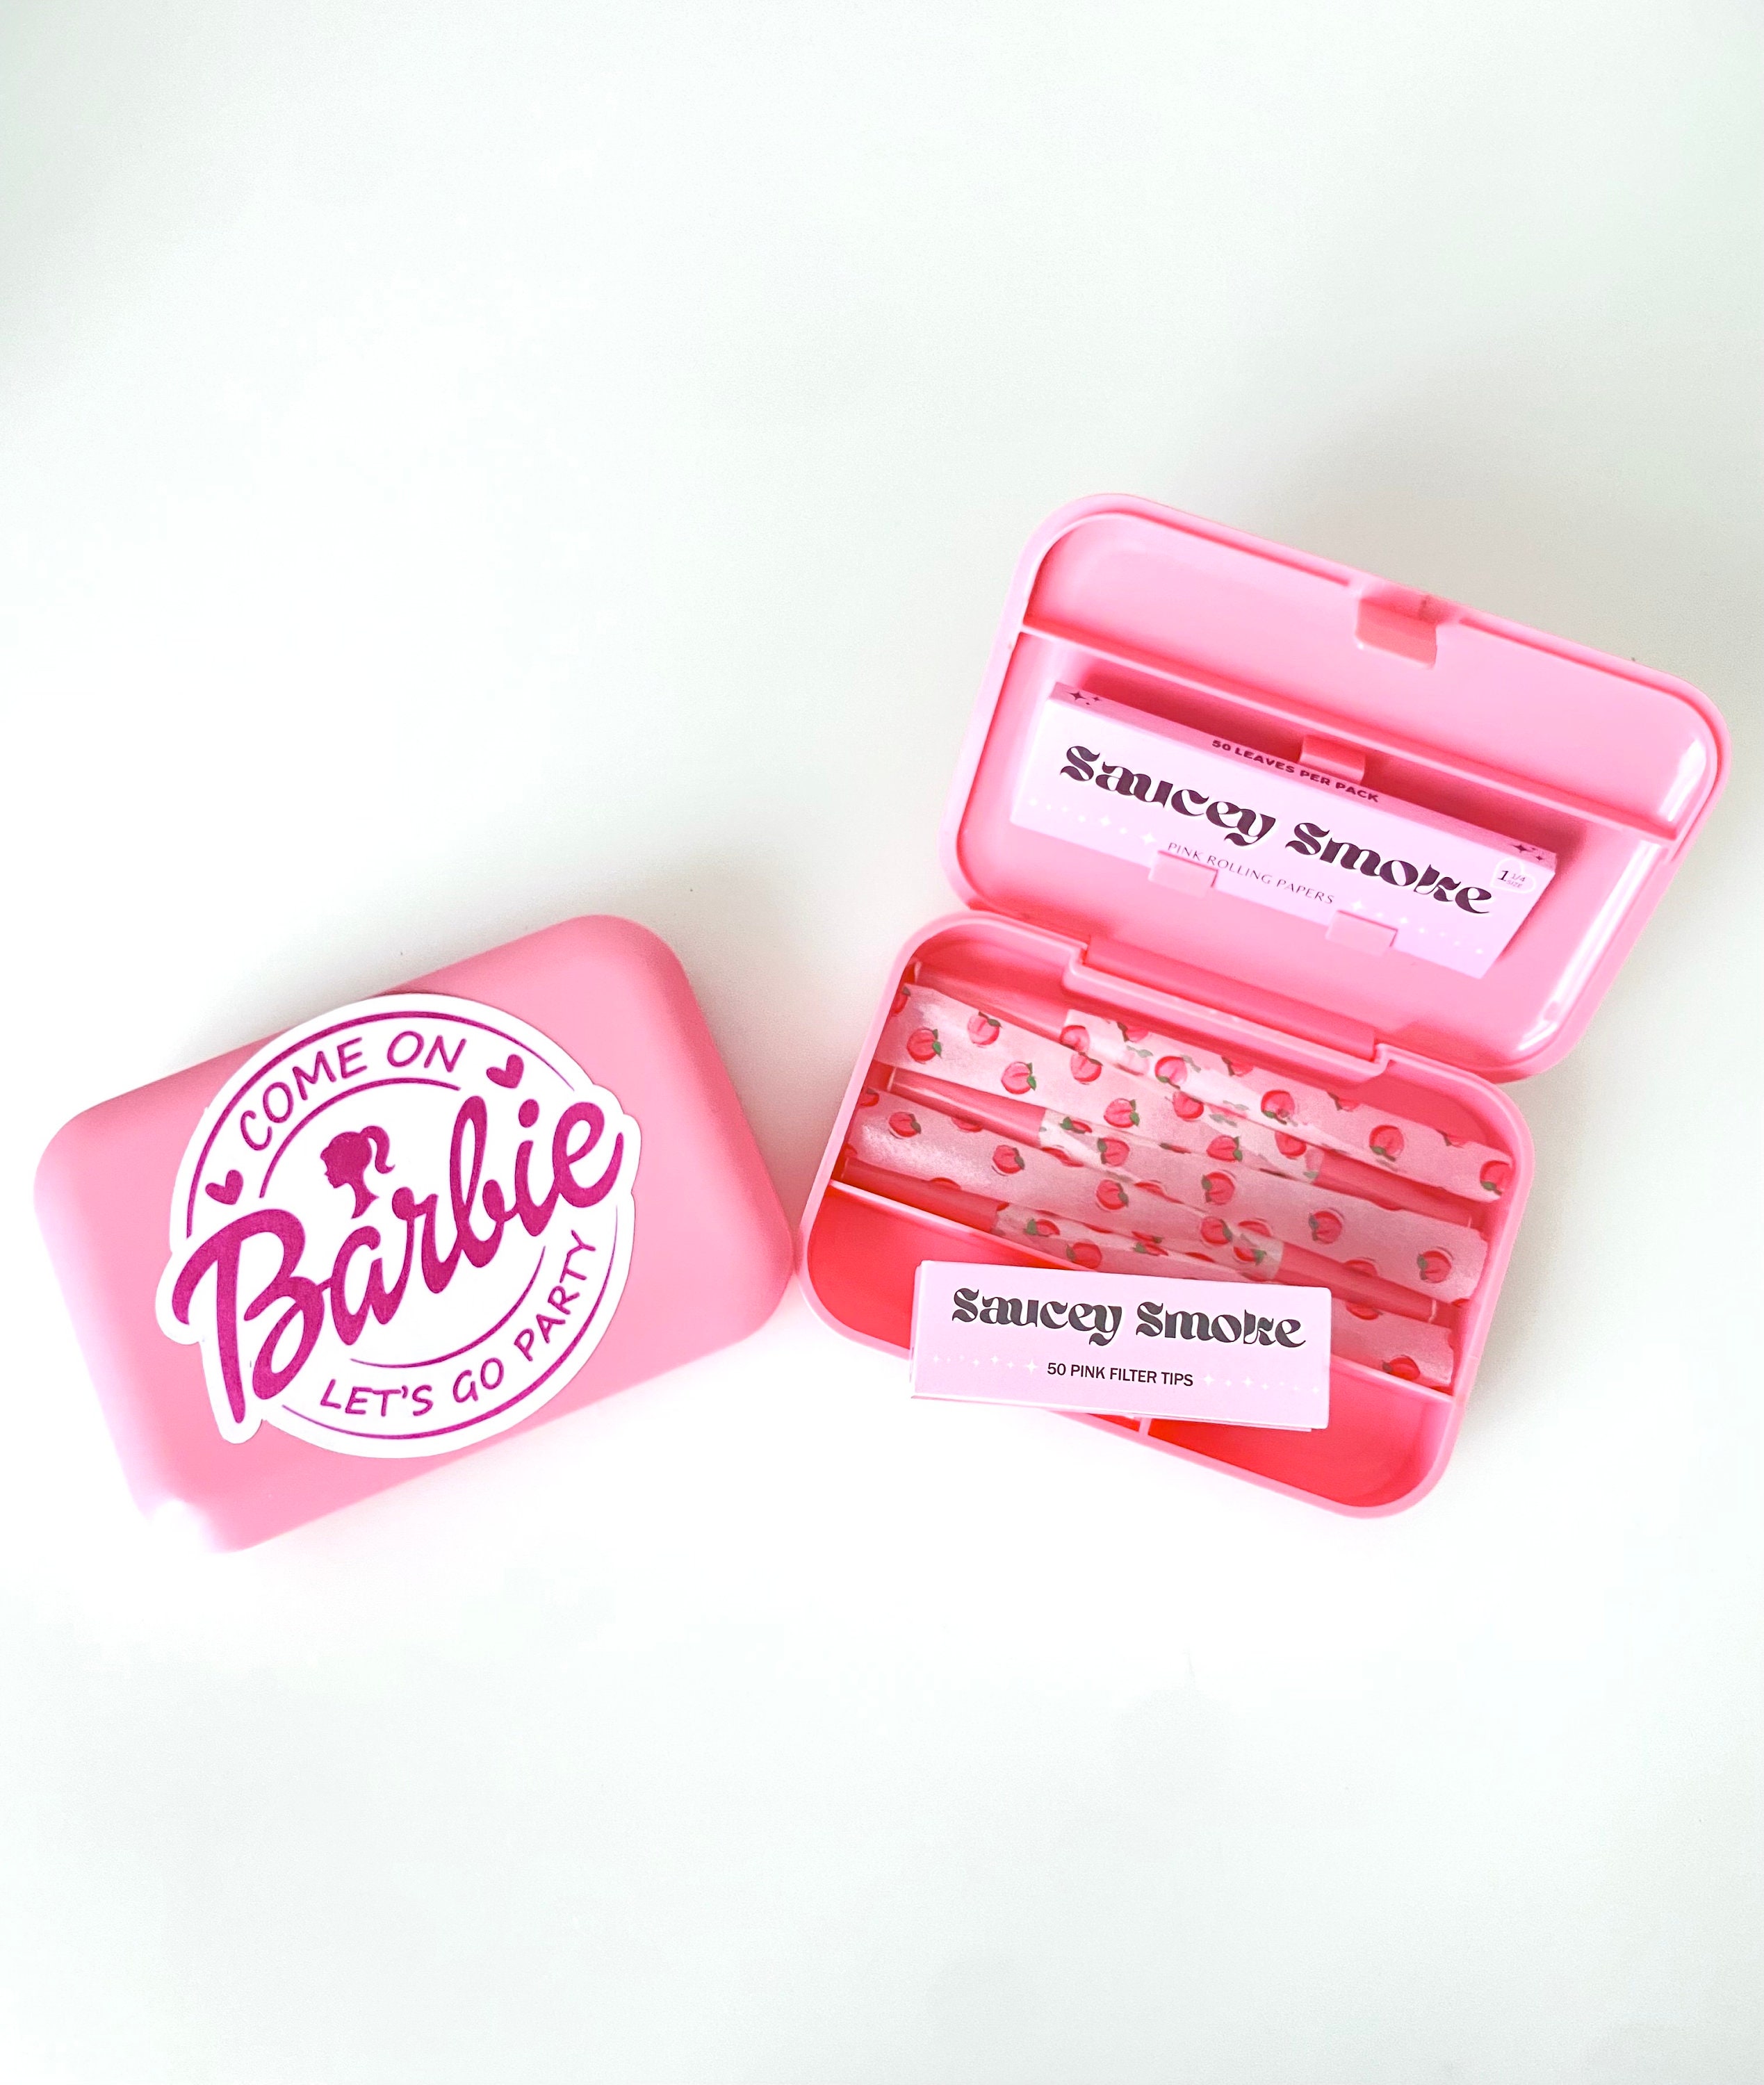 Backwoods Barbie Rolling Tray Cute Pink Glitter Bundle 